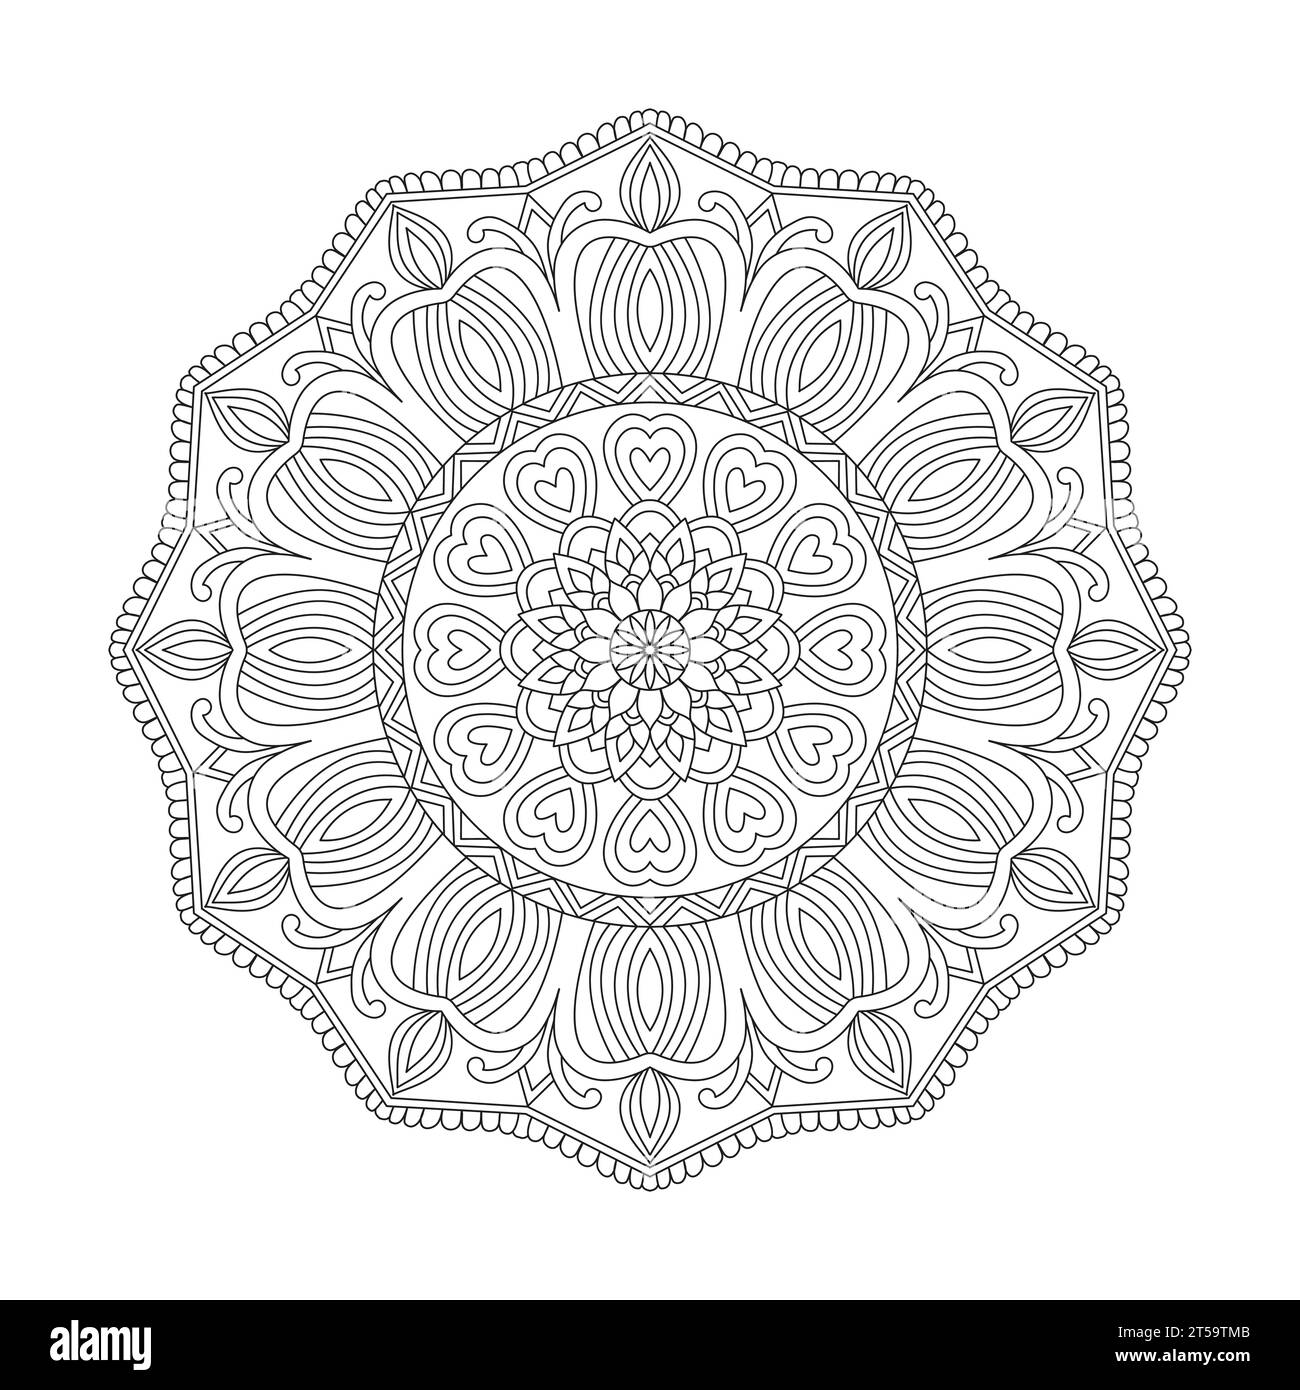 Friedliche Strudel Mandala-Malbuchseite für Erwachsene für KDP-Bucheinbau. Friedliche Blütenblätter, Fähigkeit zum Entspannen, Gehirnerlebnisse, harmonische Oase, Stock Vektor